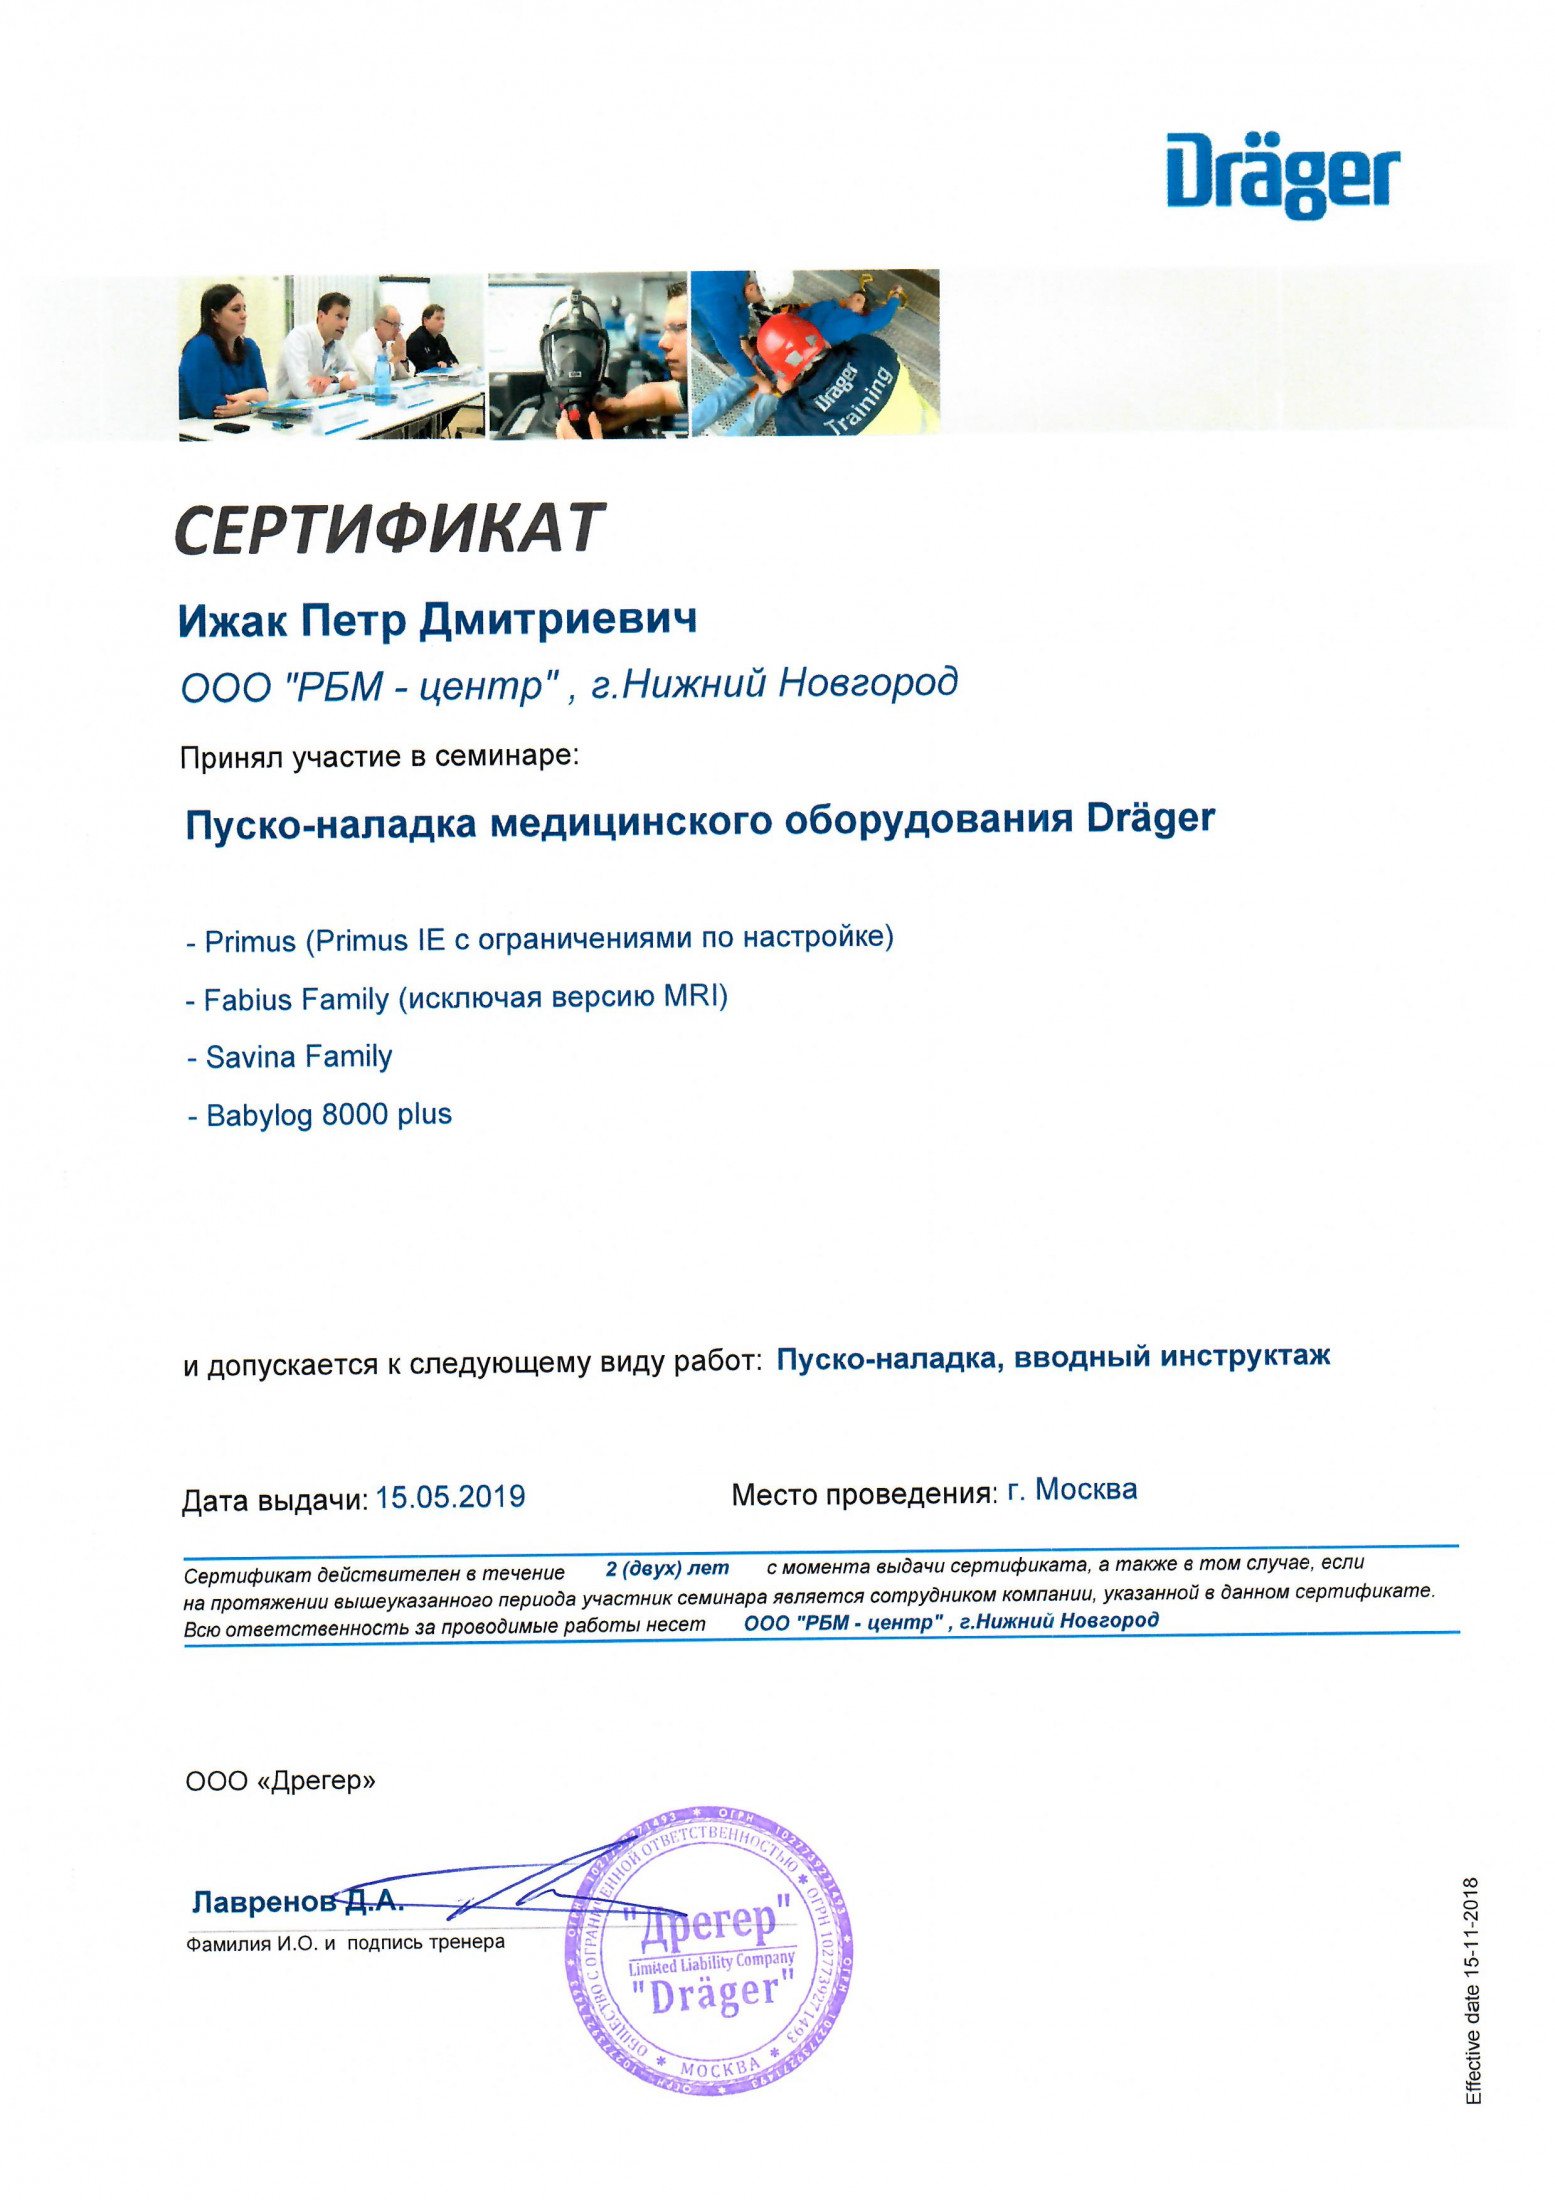 Сертификат от Dräger 2019